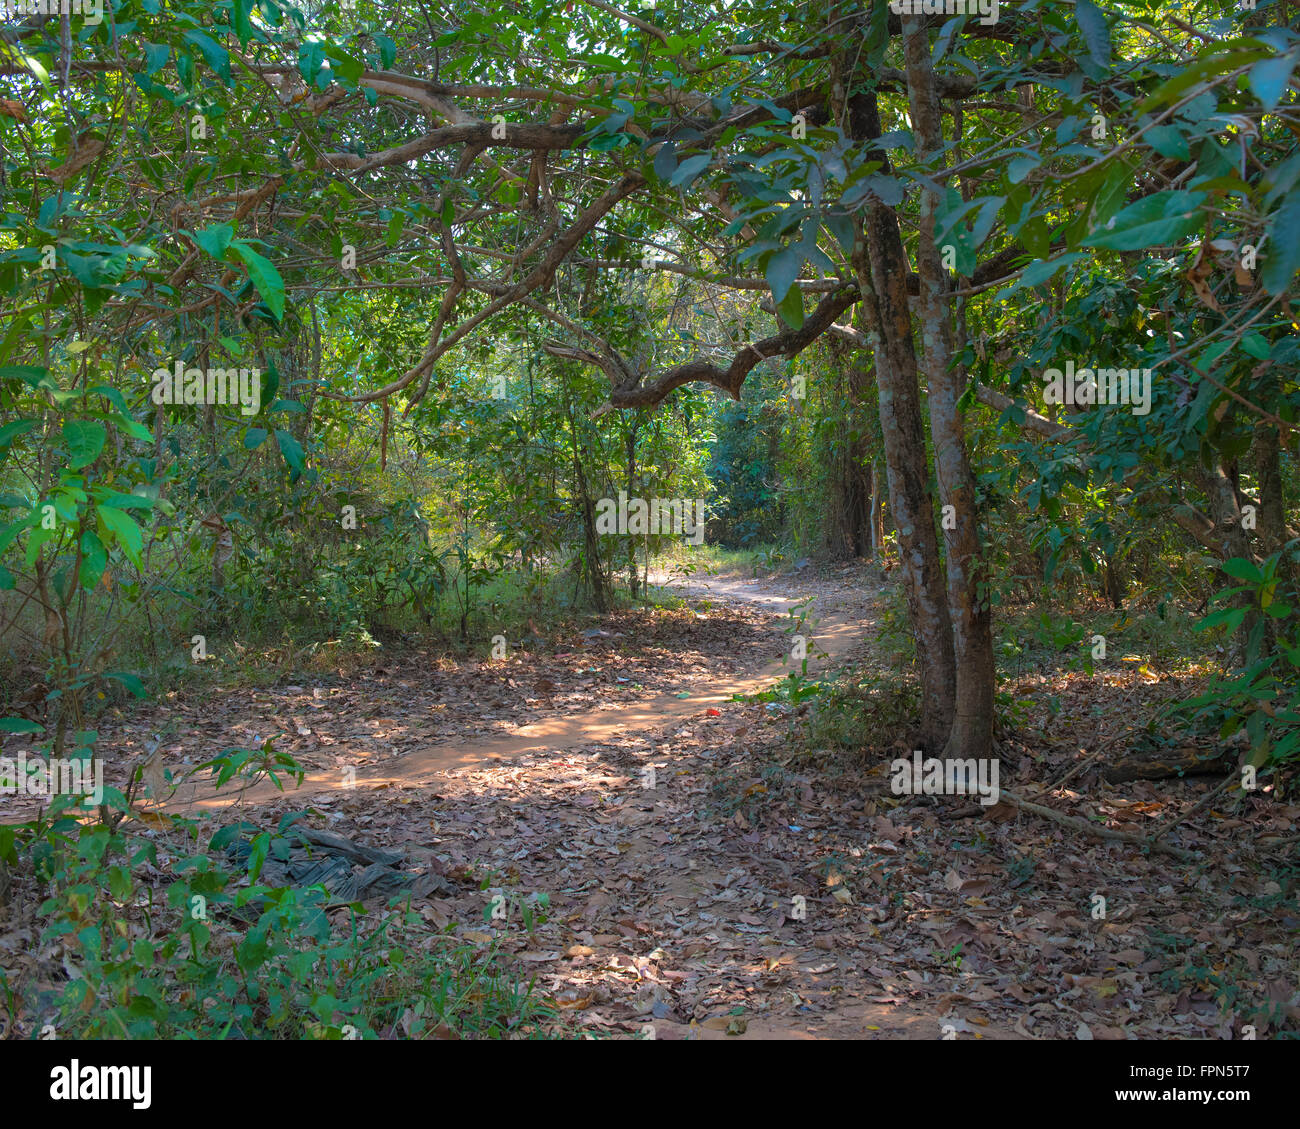 Dappled shady Jungle path in Angkhor, Cambodia. Stock Photo